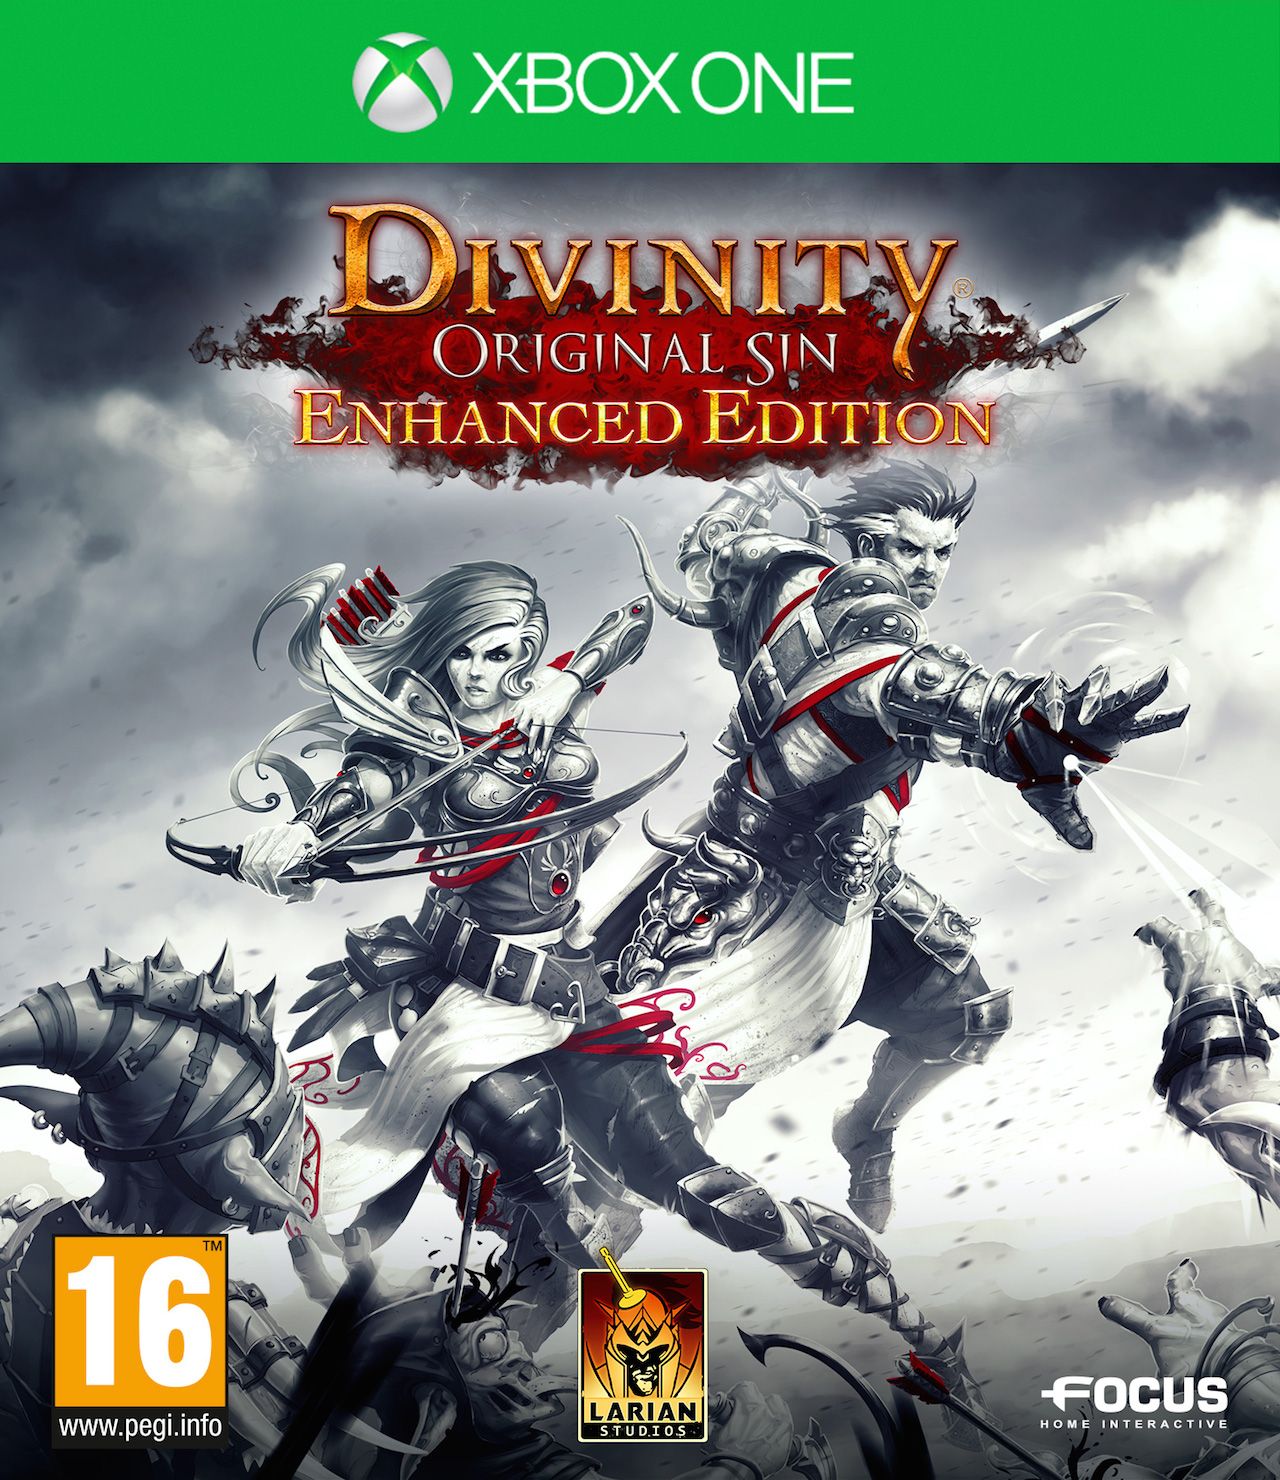 jaquette reduite de Divinity: Original Sin Enhanced Edition sur Xbox One